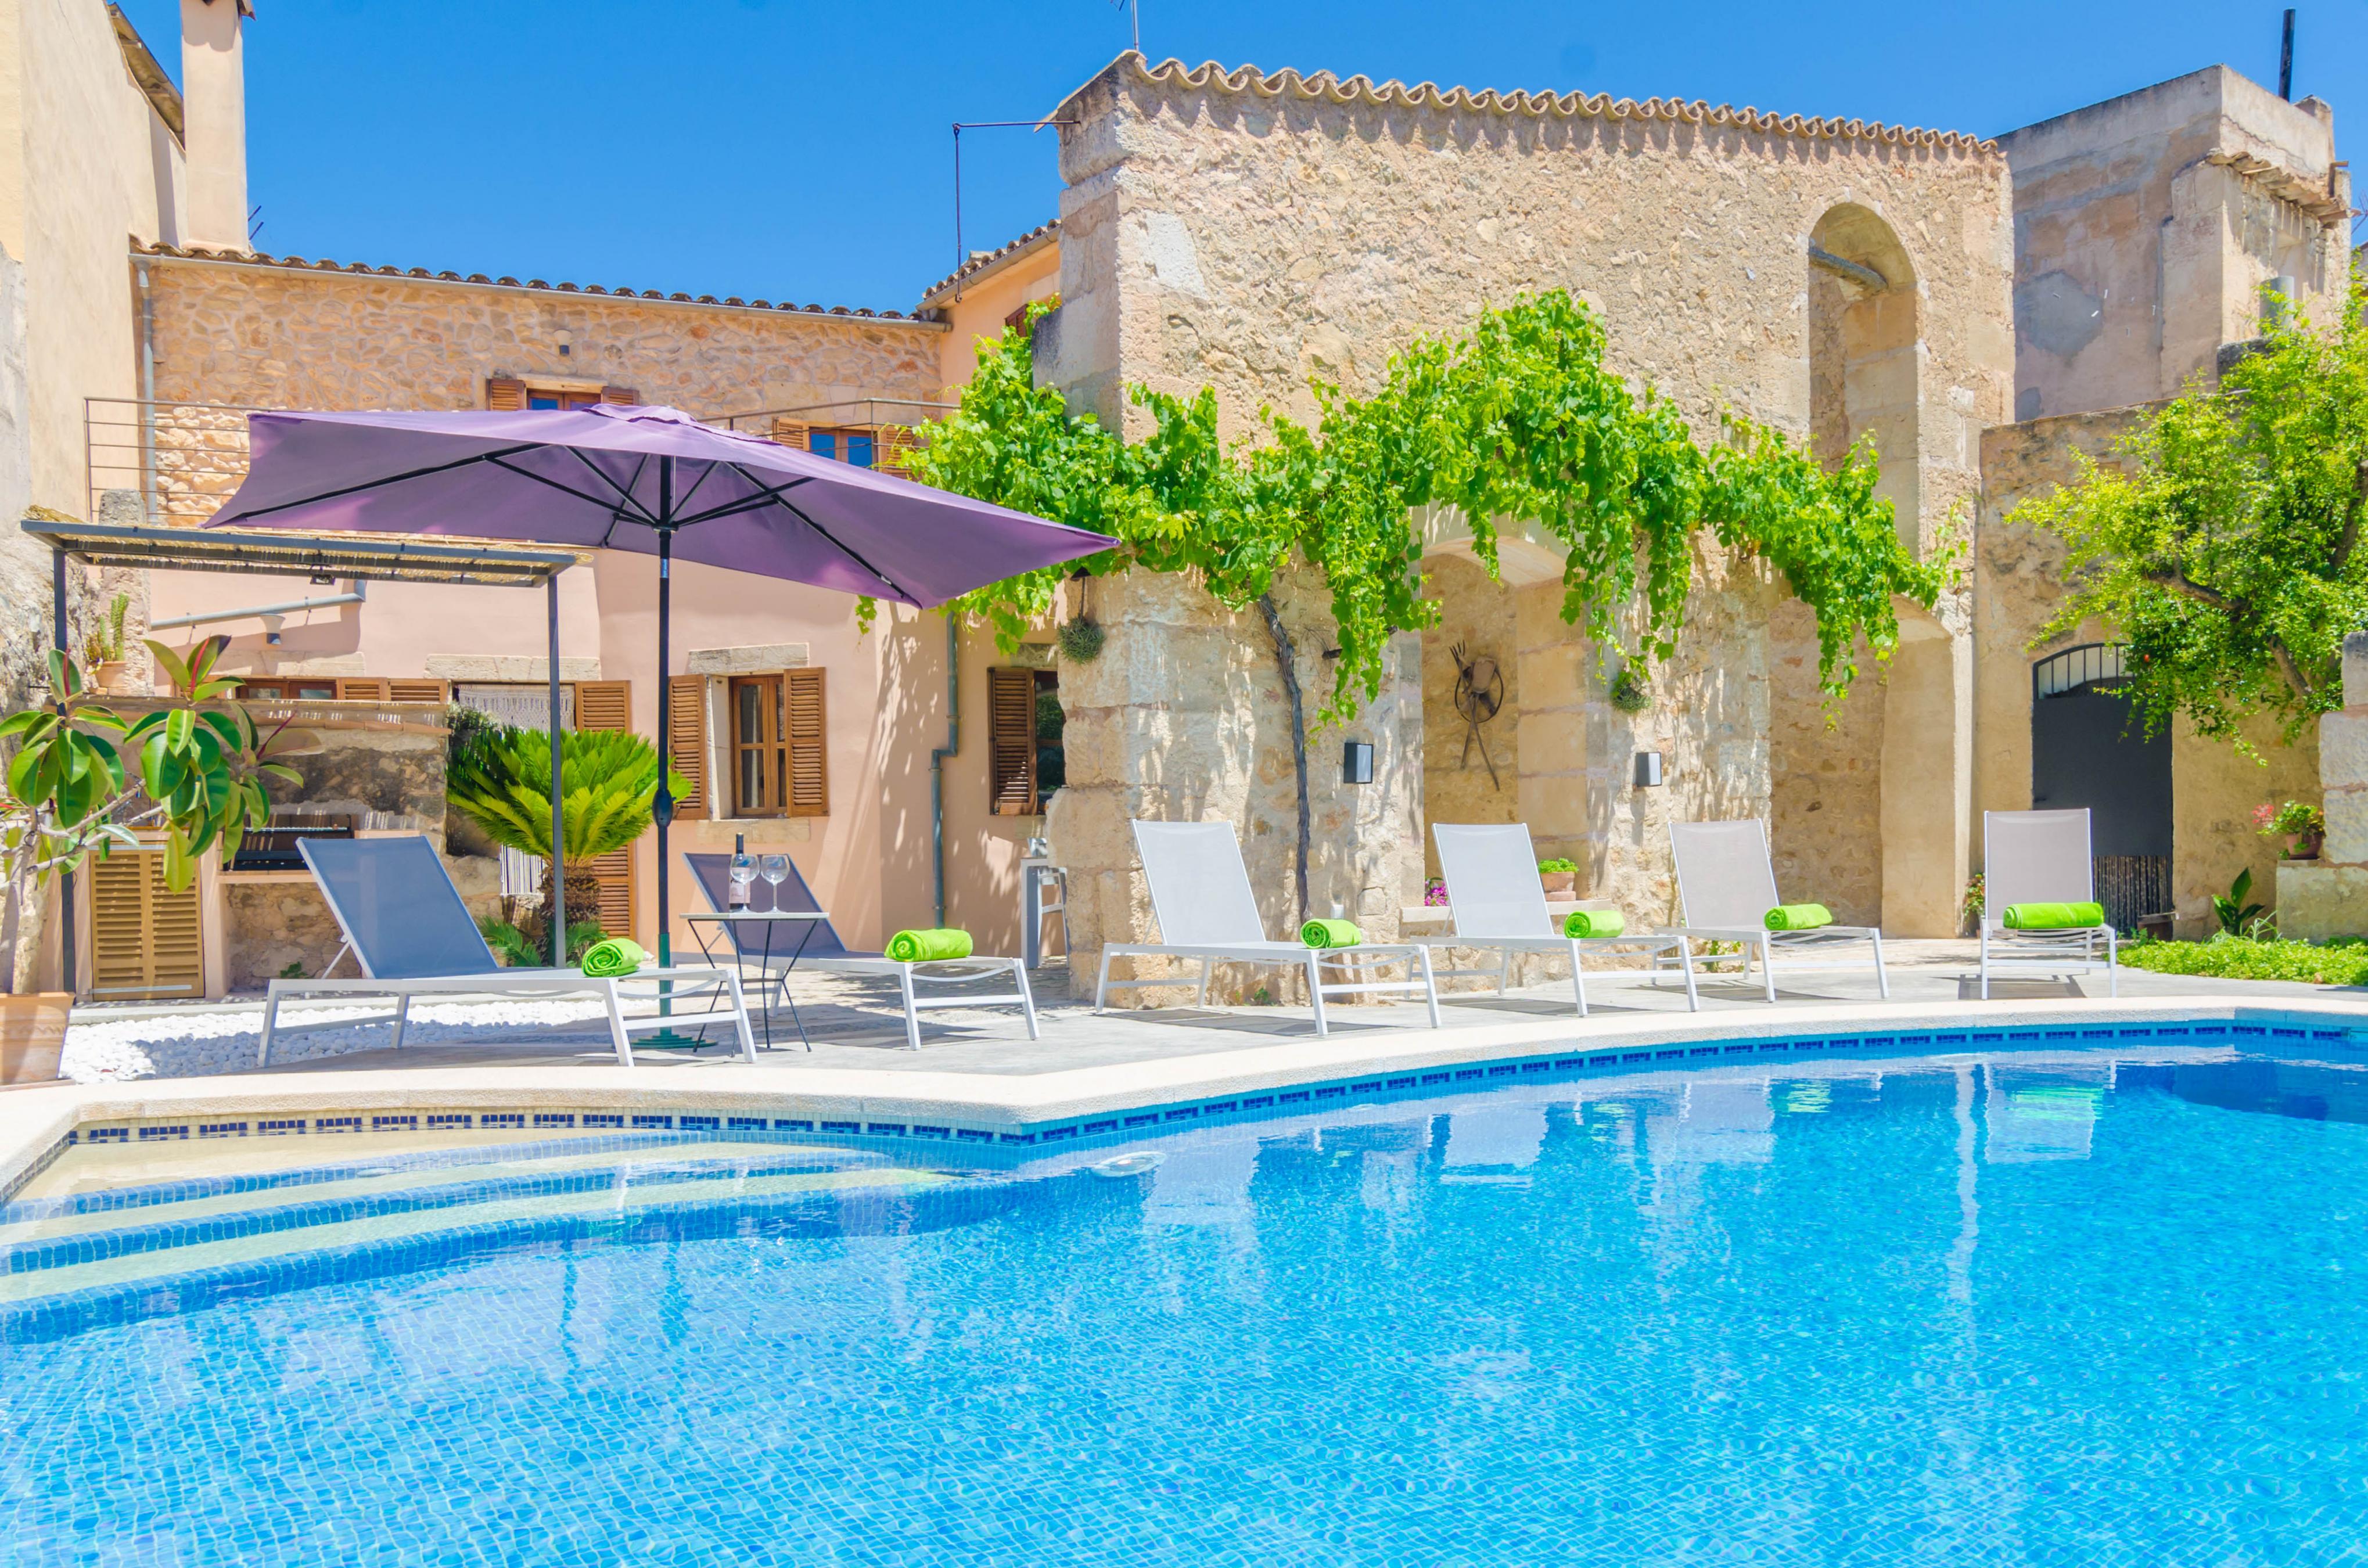 Property Image 1 - SA CASA VELLA - Villa with private pool in Vilafranca de Bonany. Free WiFi